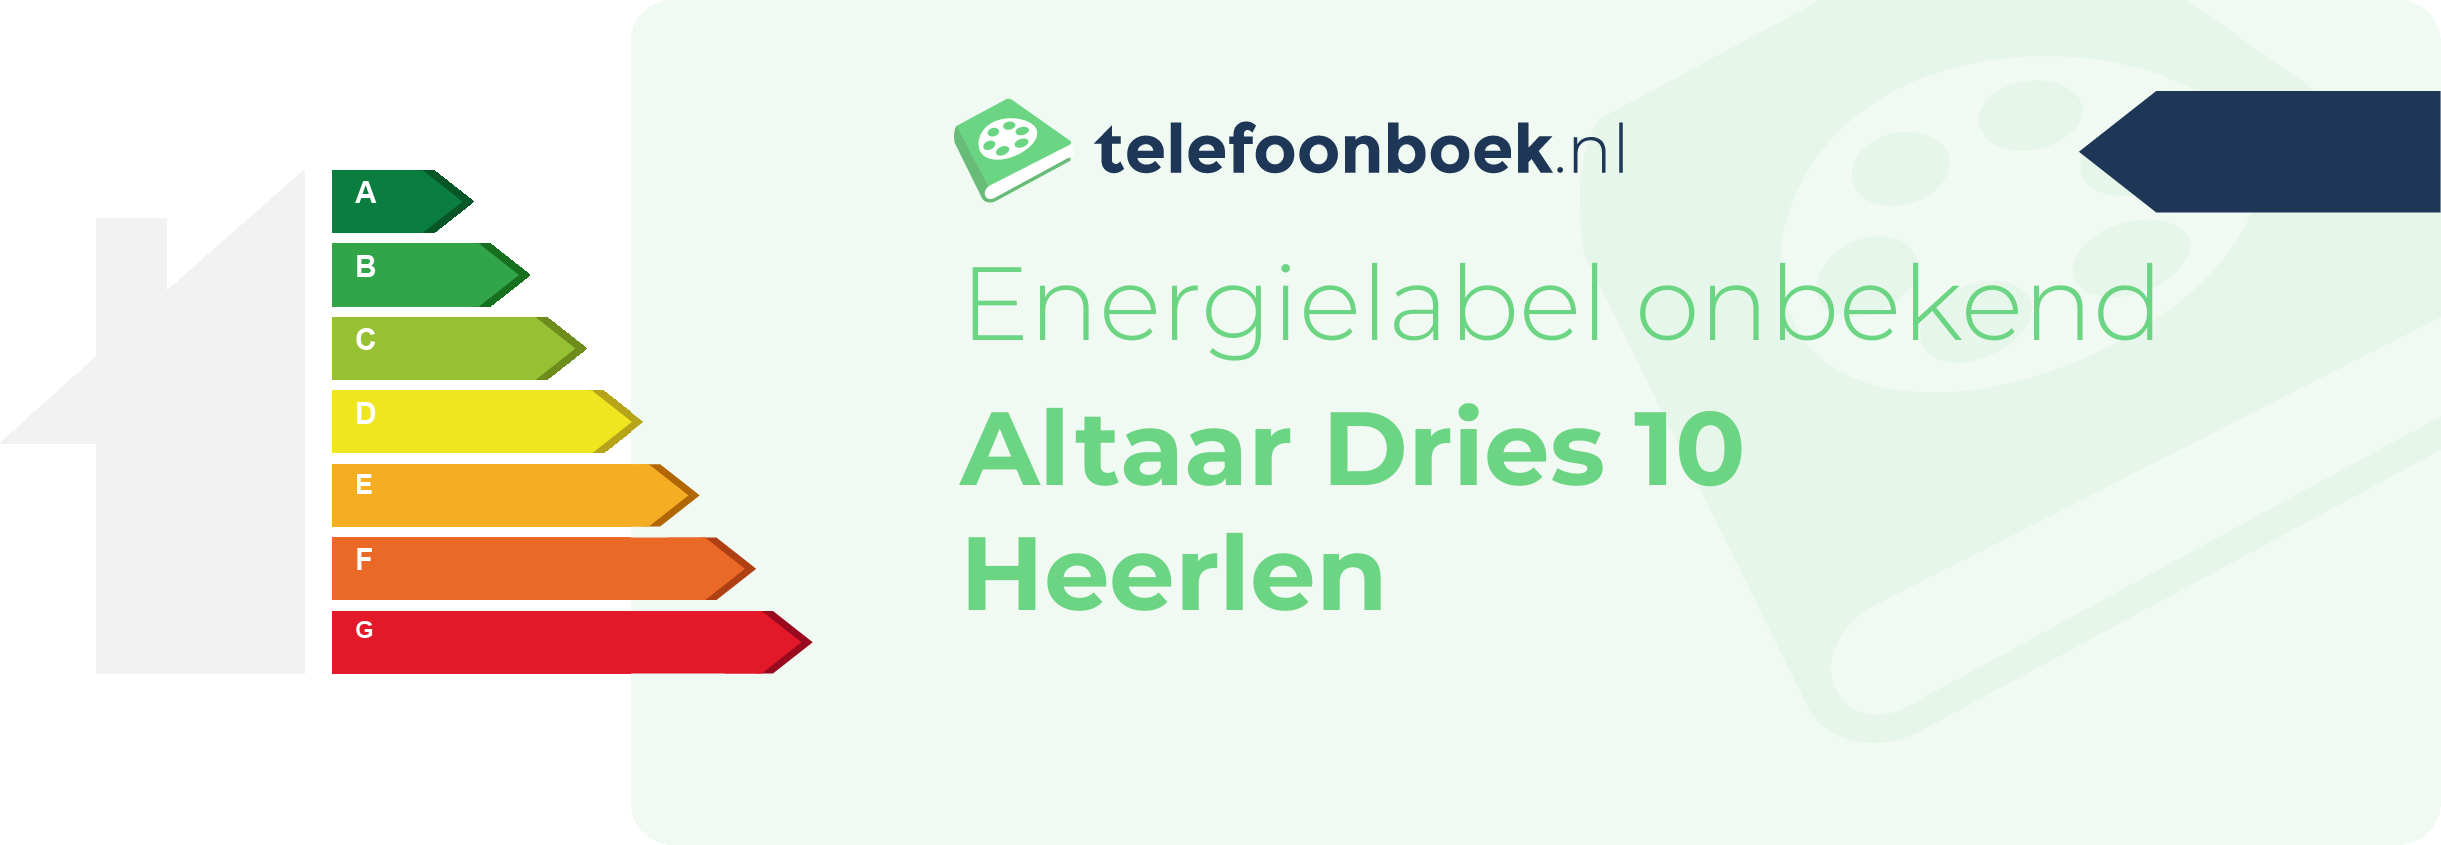 Energielabel Altaar Dries 10 Heerlen